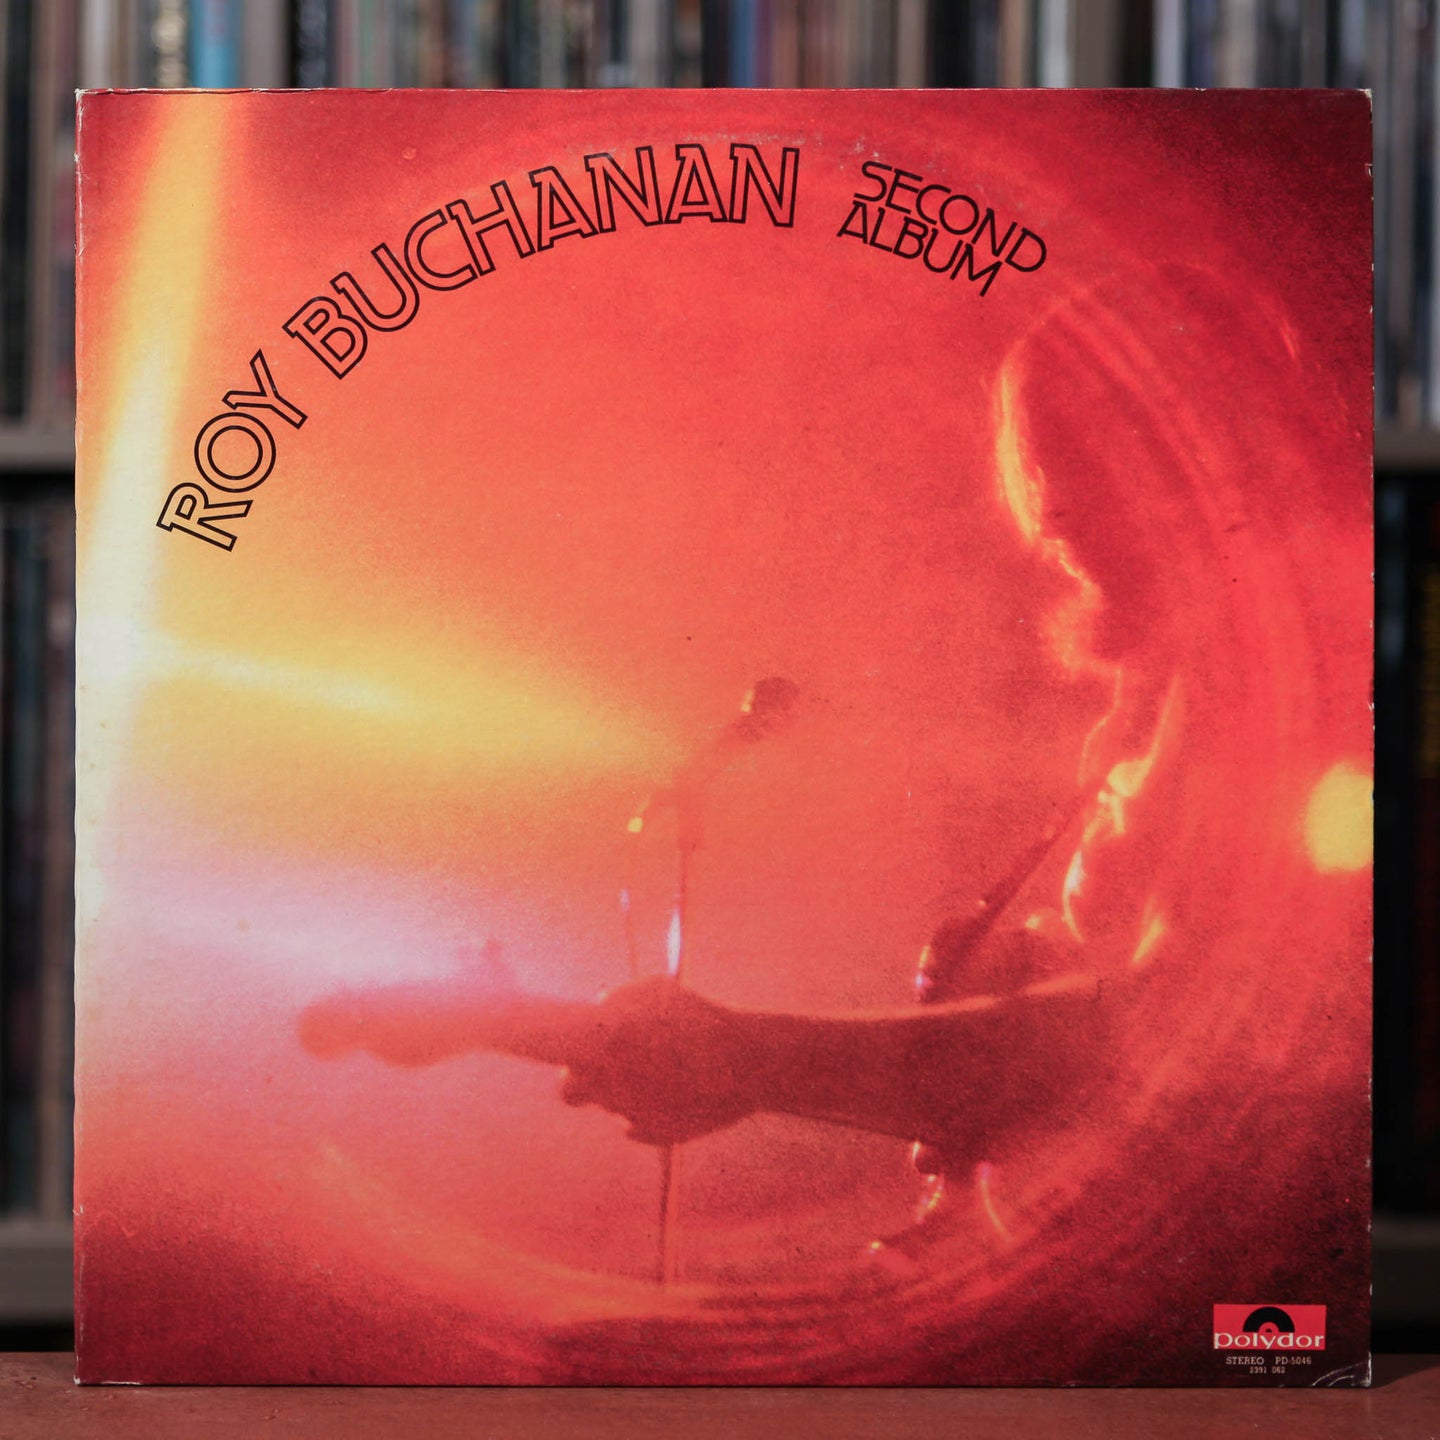 Roy Buchanan - Second Album - 1973 Polydor, VG+/VG+